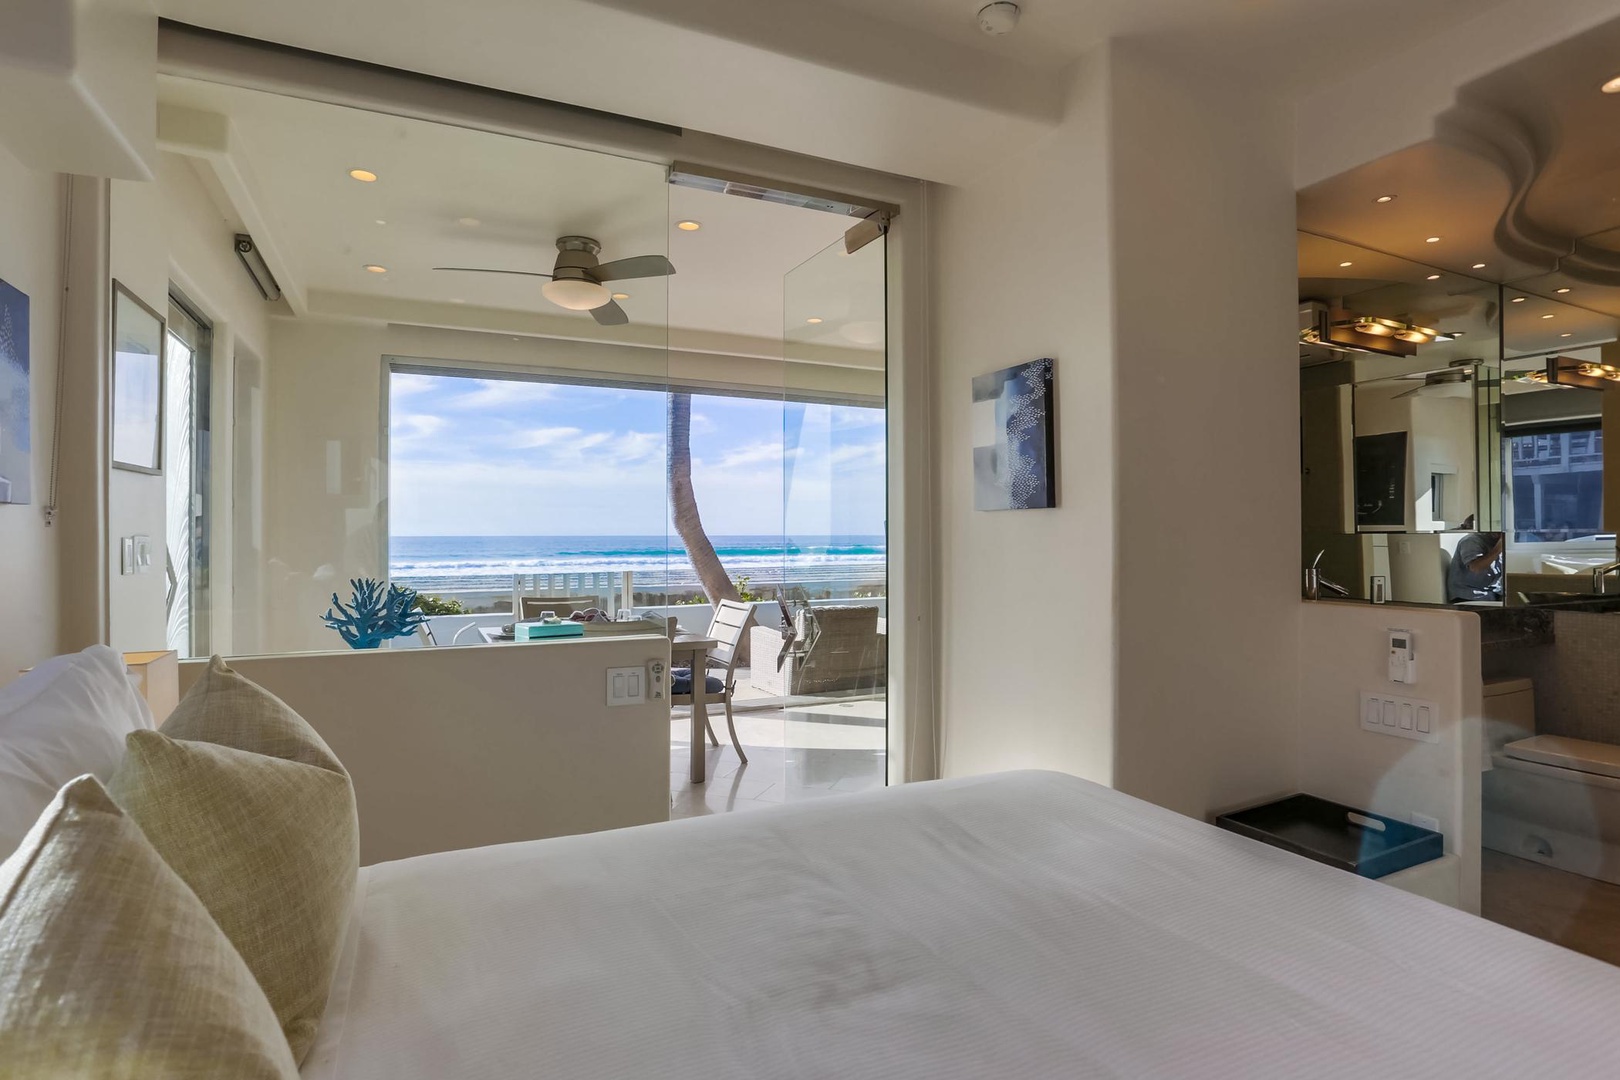 Bedroom has direct ocean views